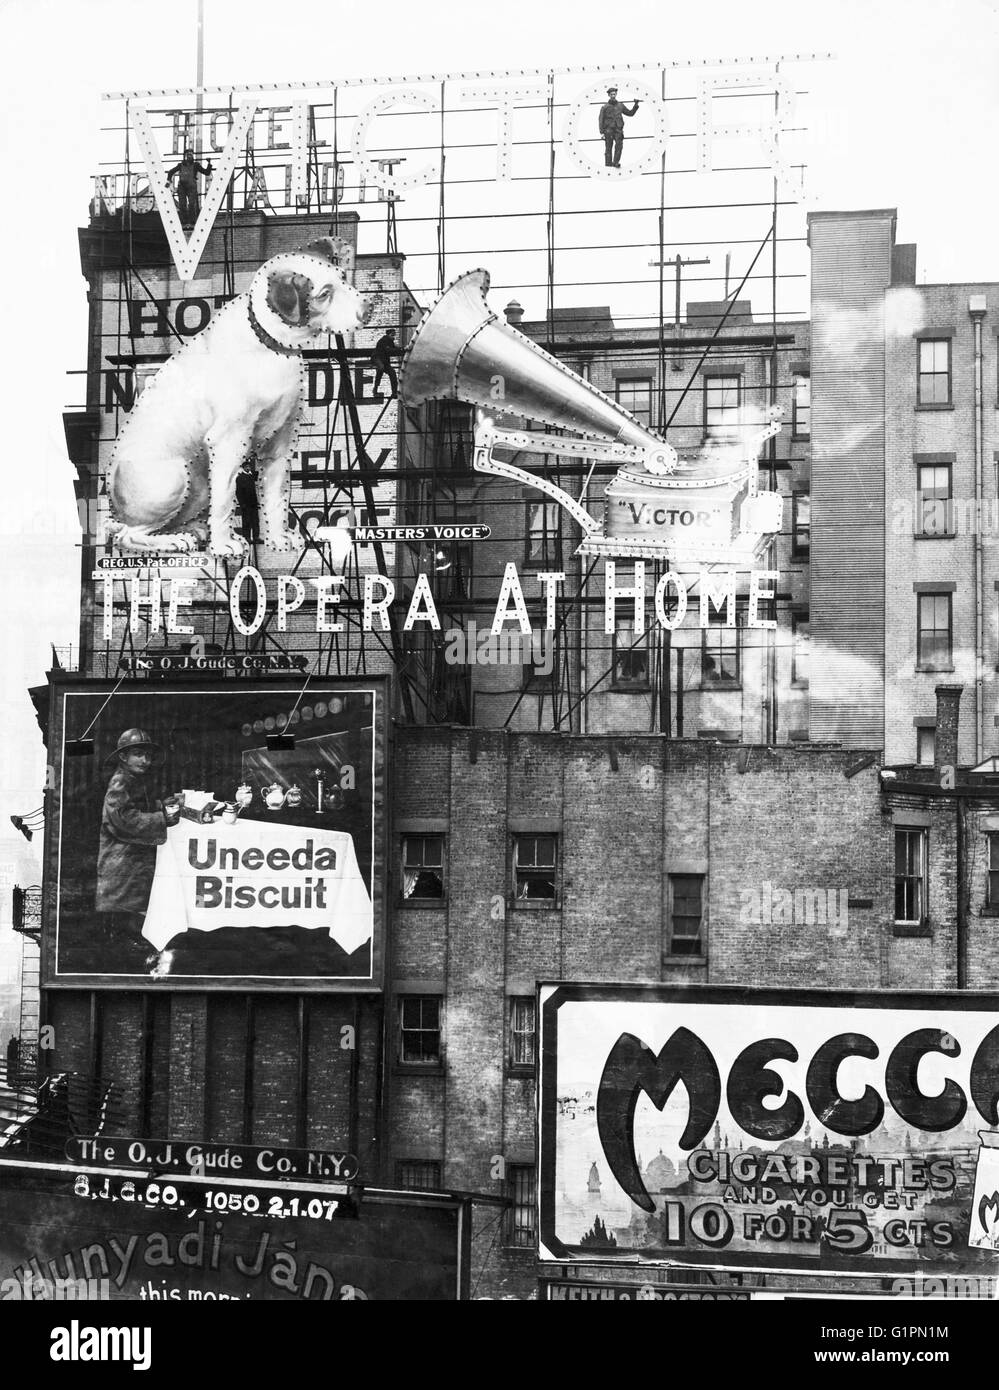 NEW YORK CITY: segni, c1899. Gli annunci pubblicitari e i cartelloni, possibilmente in Times Square a New York City. Fotografia, c1899. Foto Stock